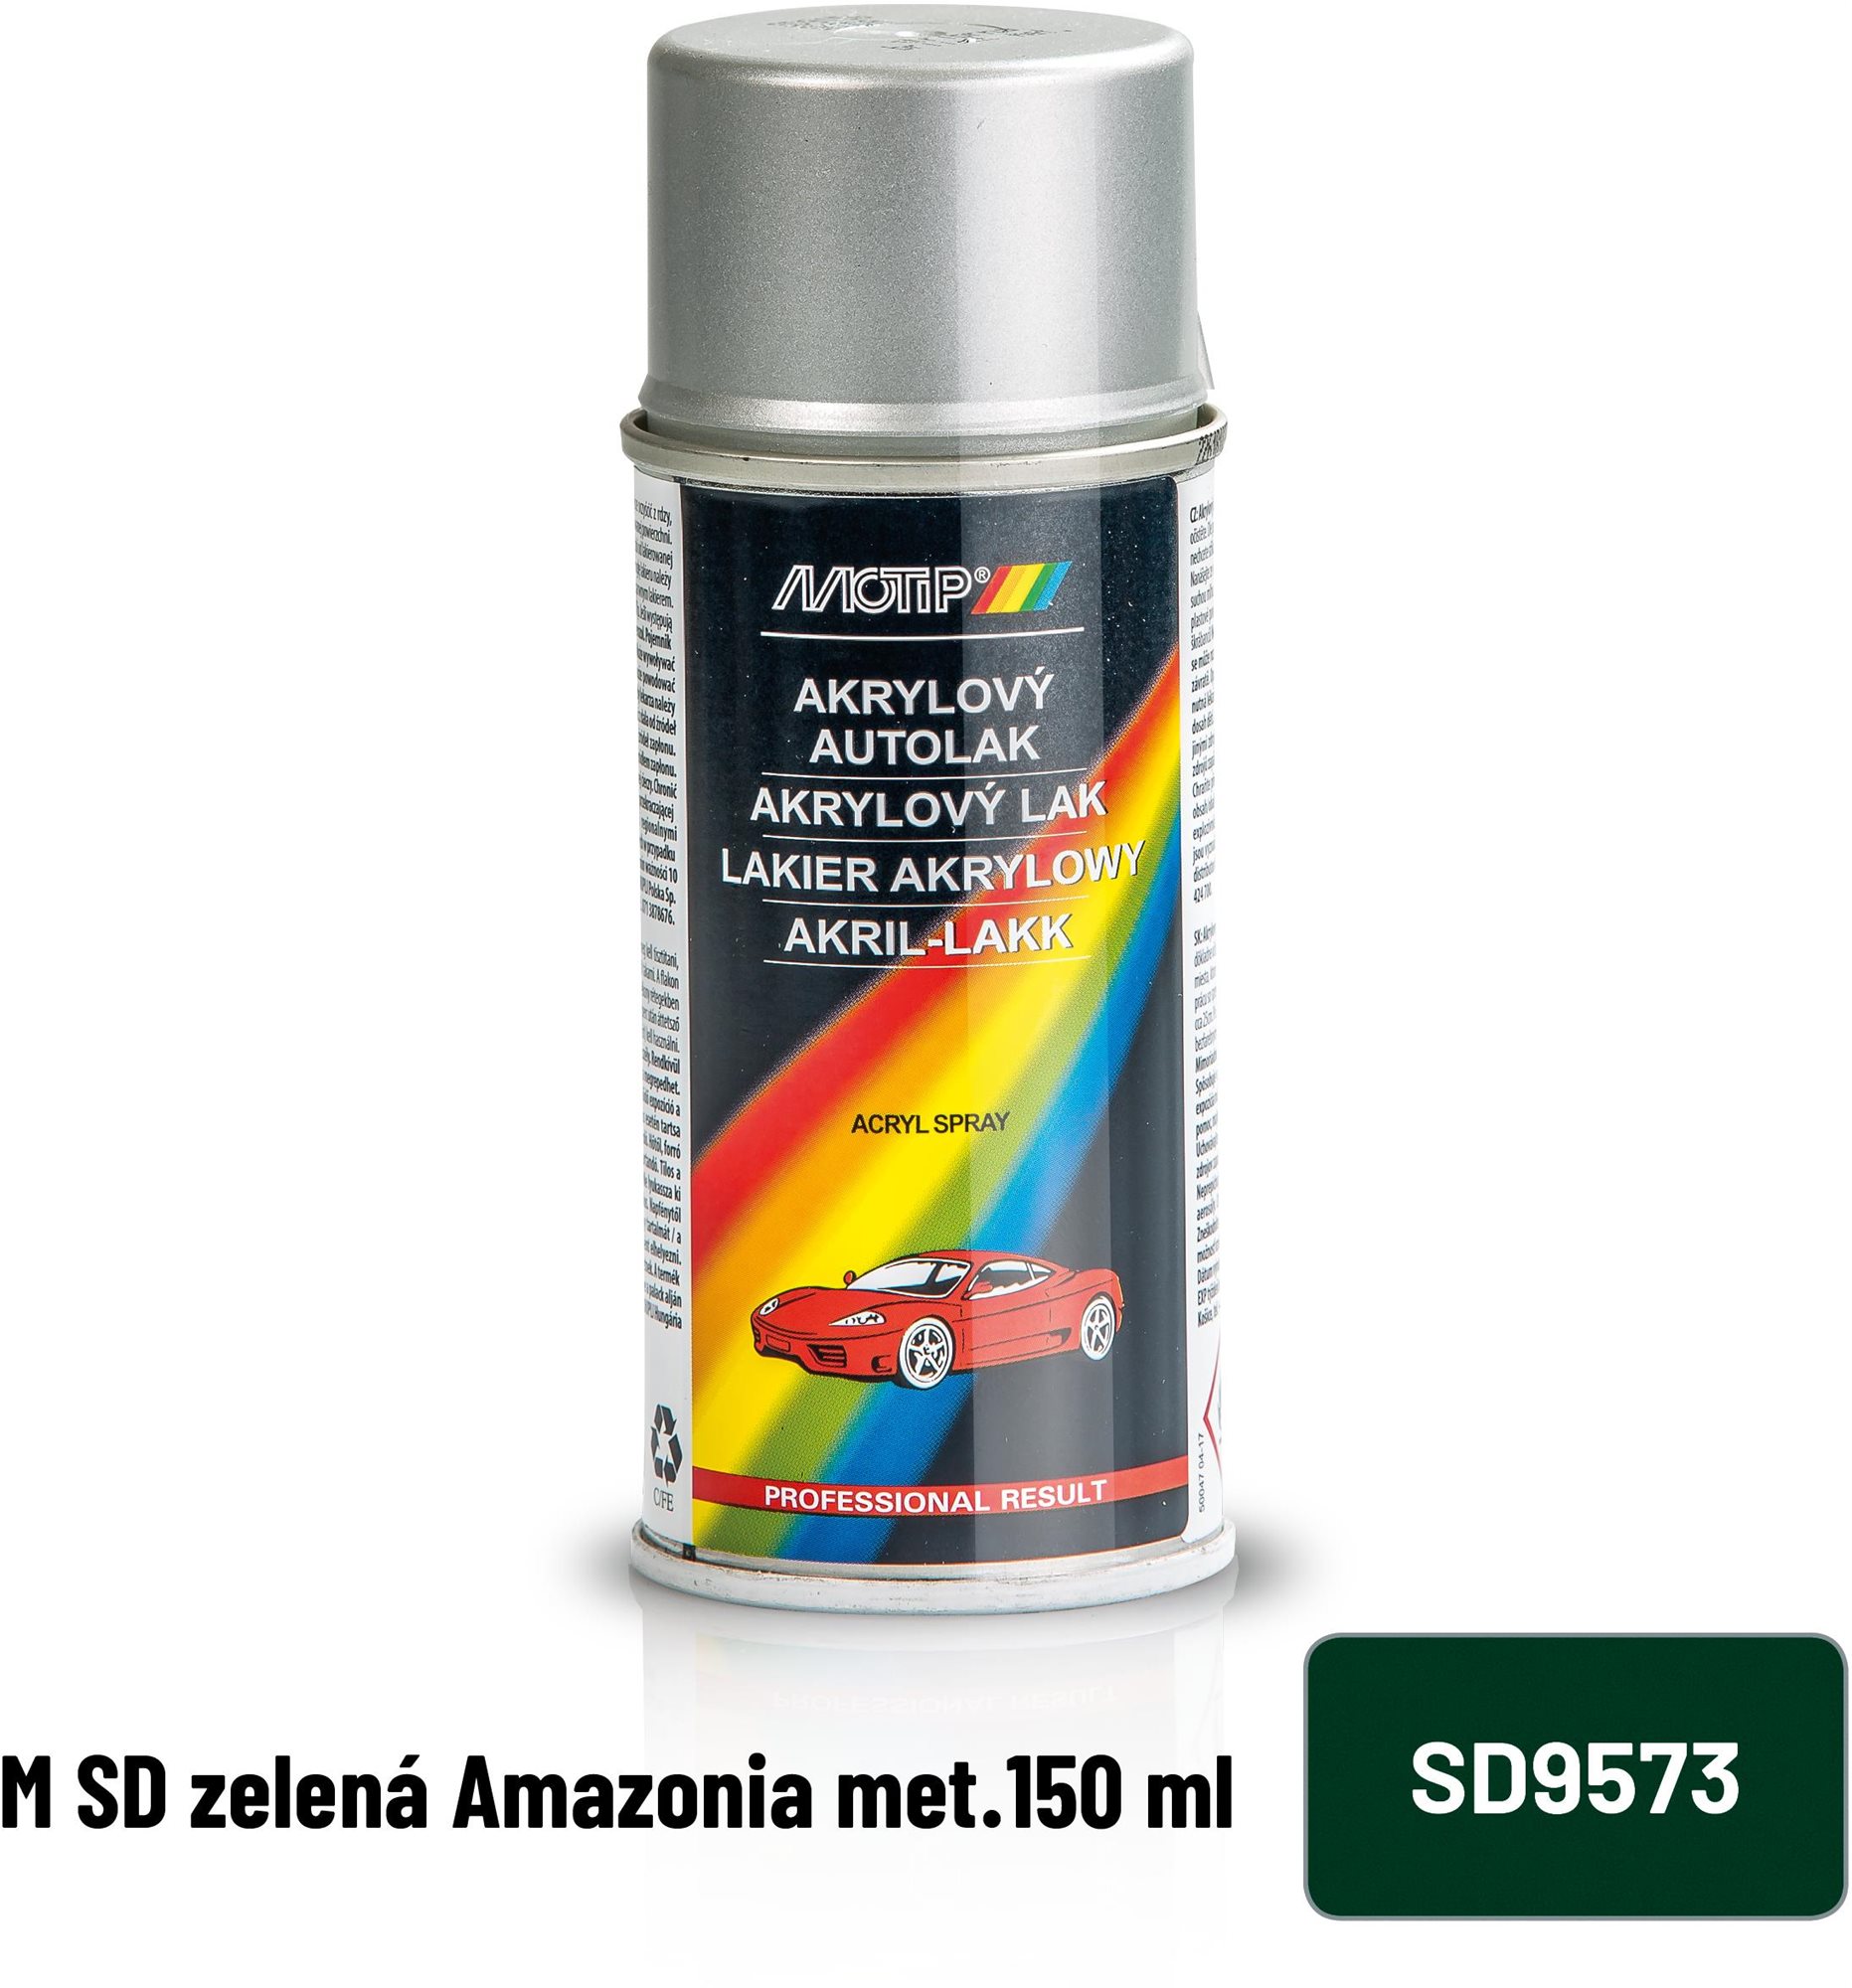 MOTIP M SD Amazonia met.150 ml